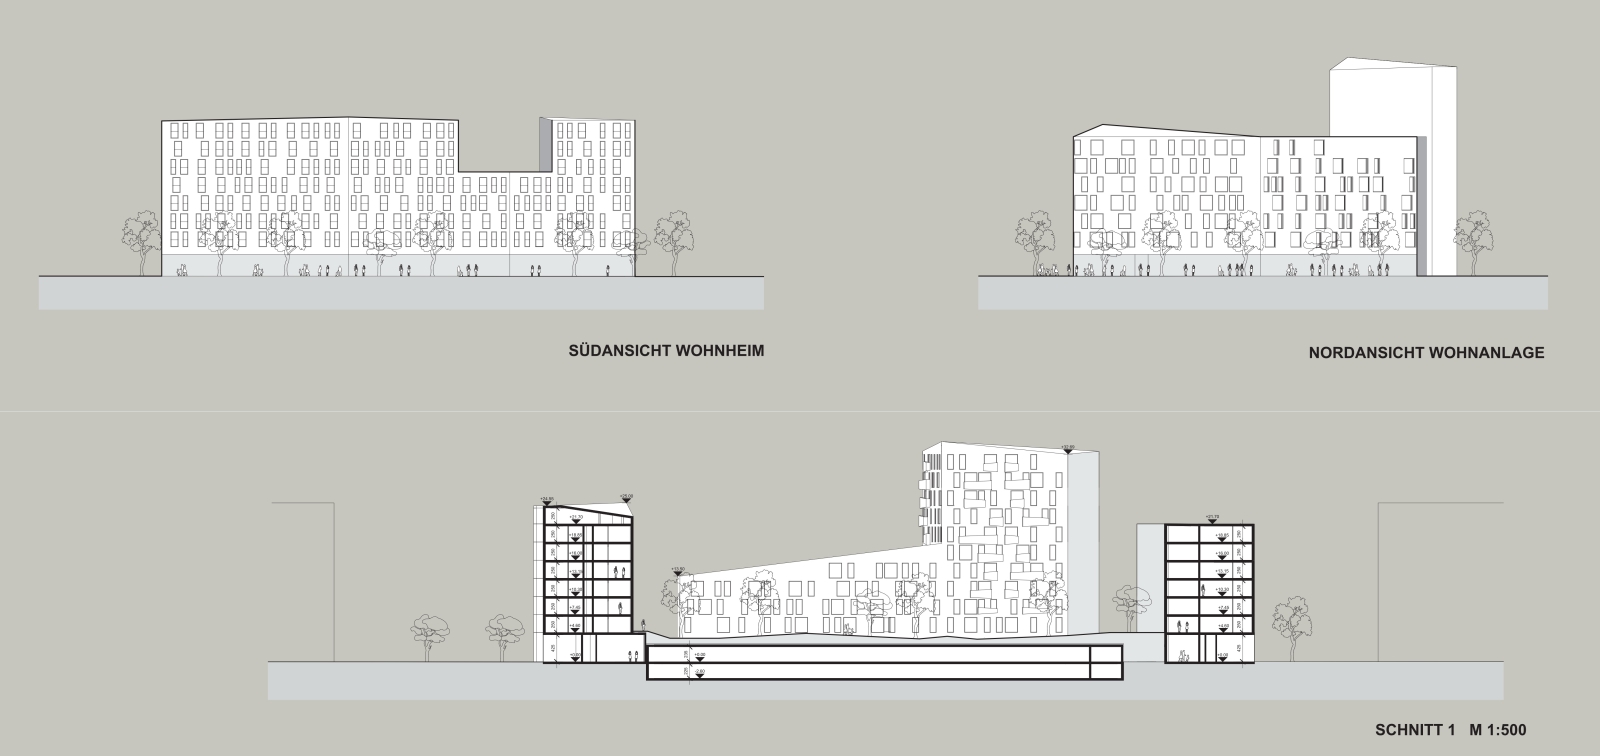 bhe-architektur-seestadt-aspern-j12-wohnbau-studentenheim-großgarage-5